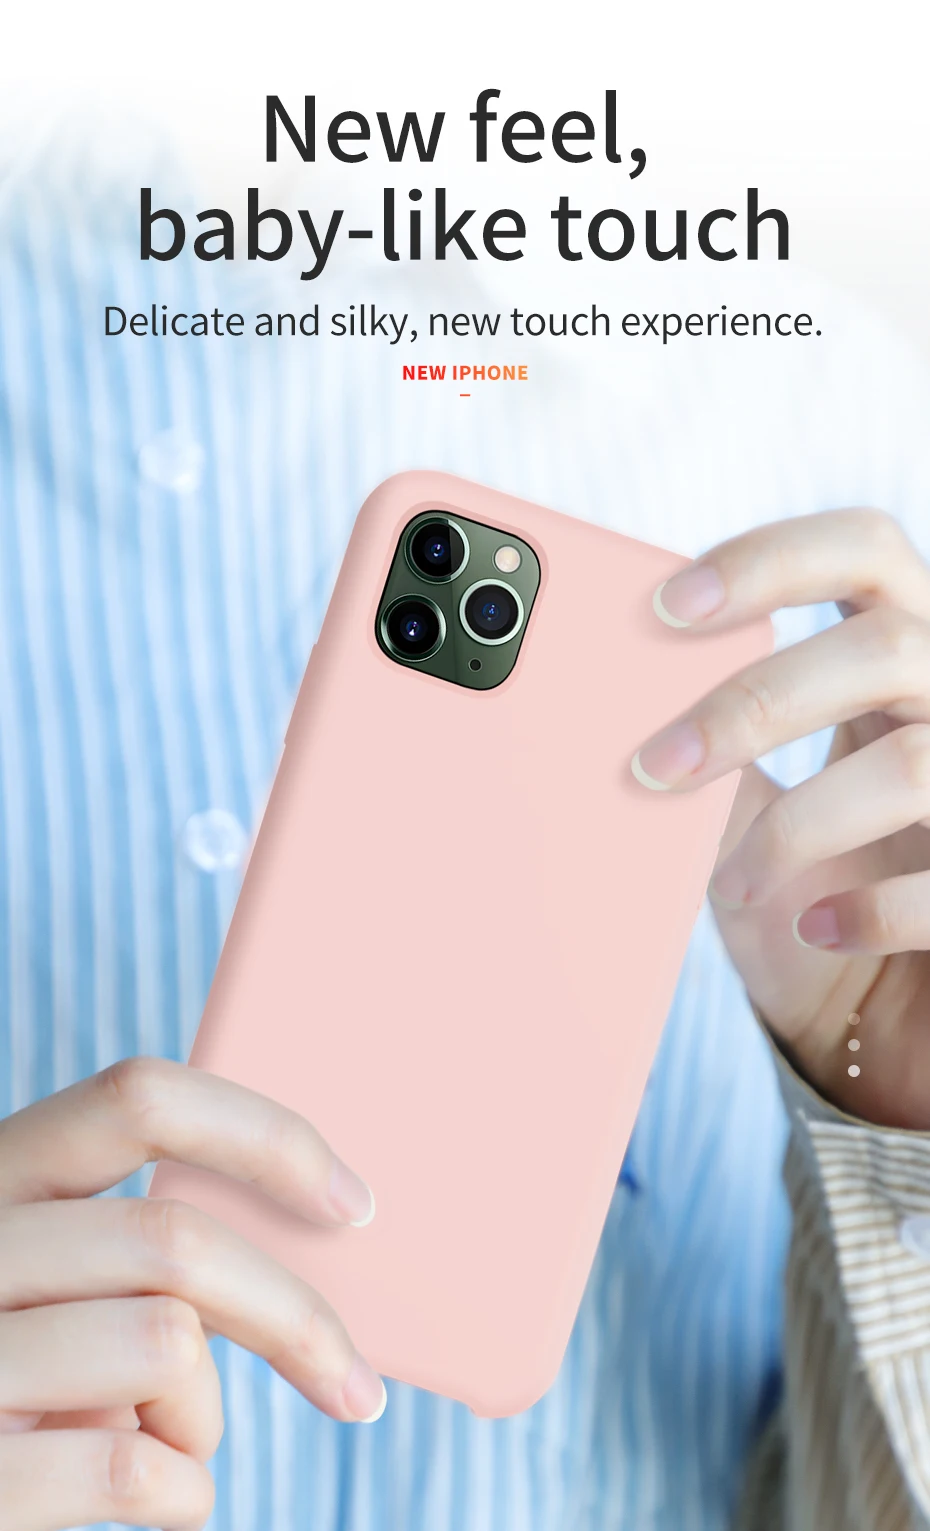 Жидкий силиконовый чехол HOCO для iPhone 11 Pro Max X XS Max XR, ультра тонкая задняя крышка, стильный премиум класса, роскошный бизнес